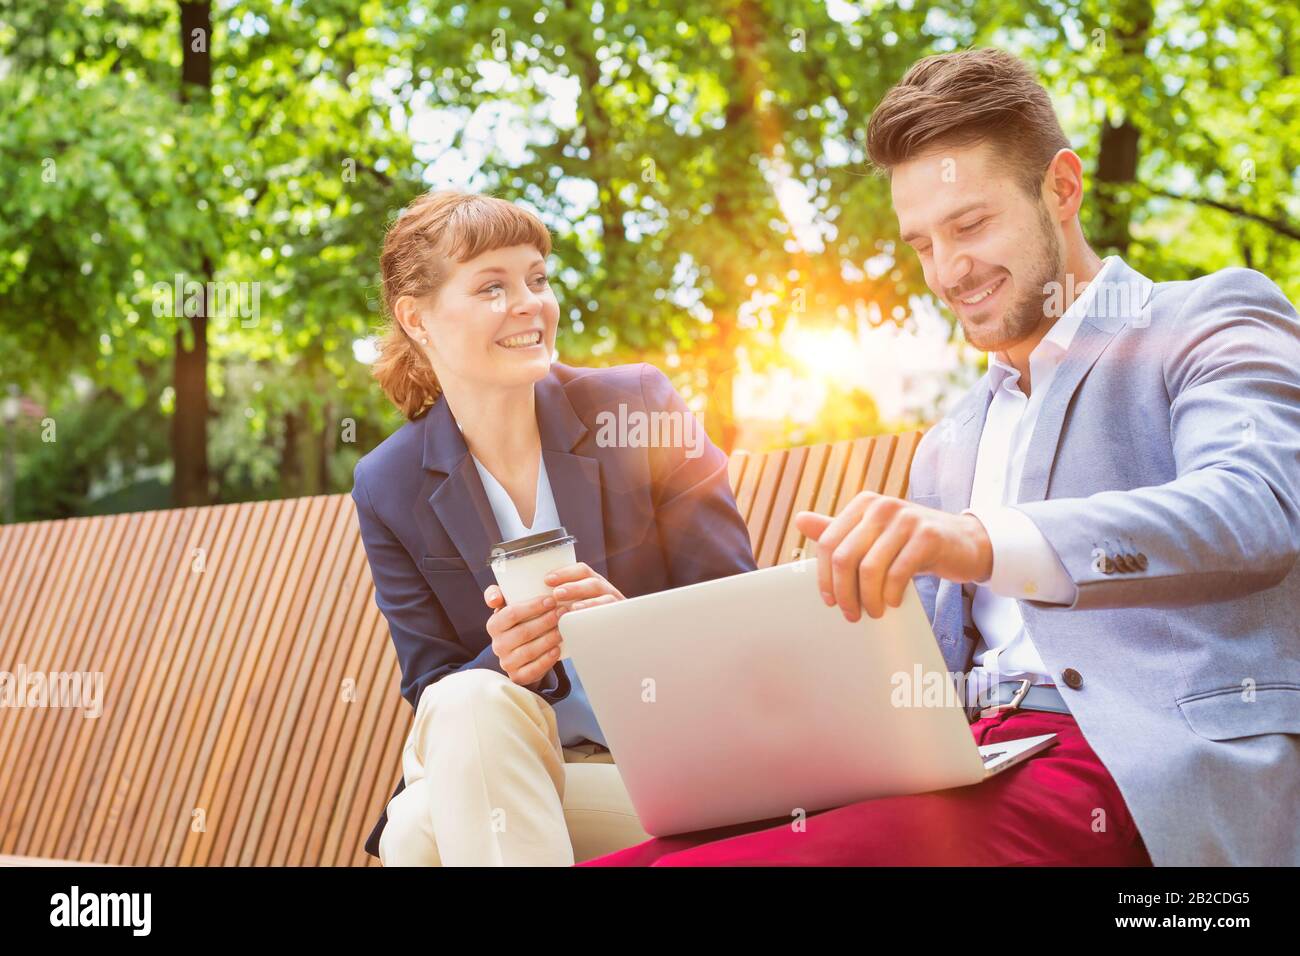 Uomo d'affari che discute i programmi sopra il laptop con businesswoman bello mentre seduto sul banco Foto Stock